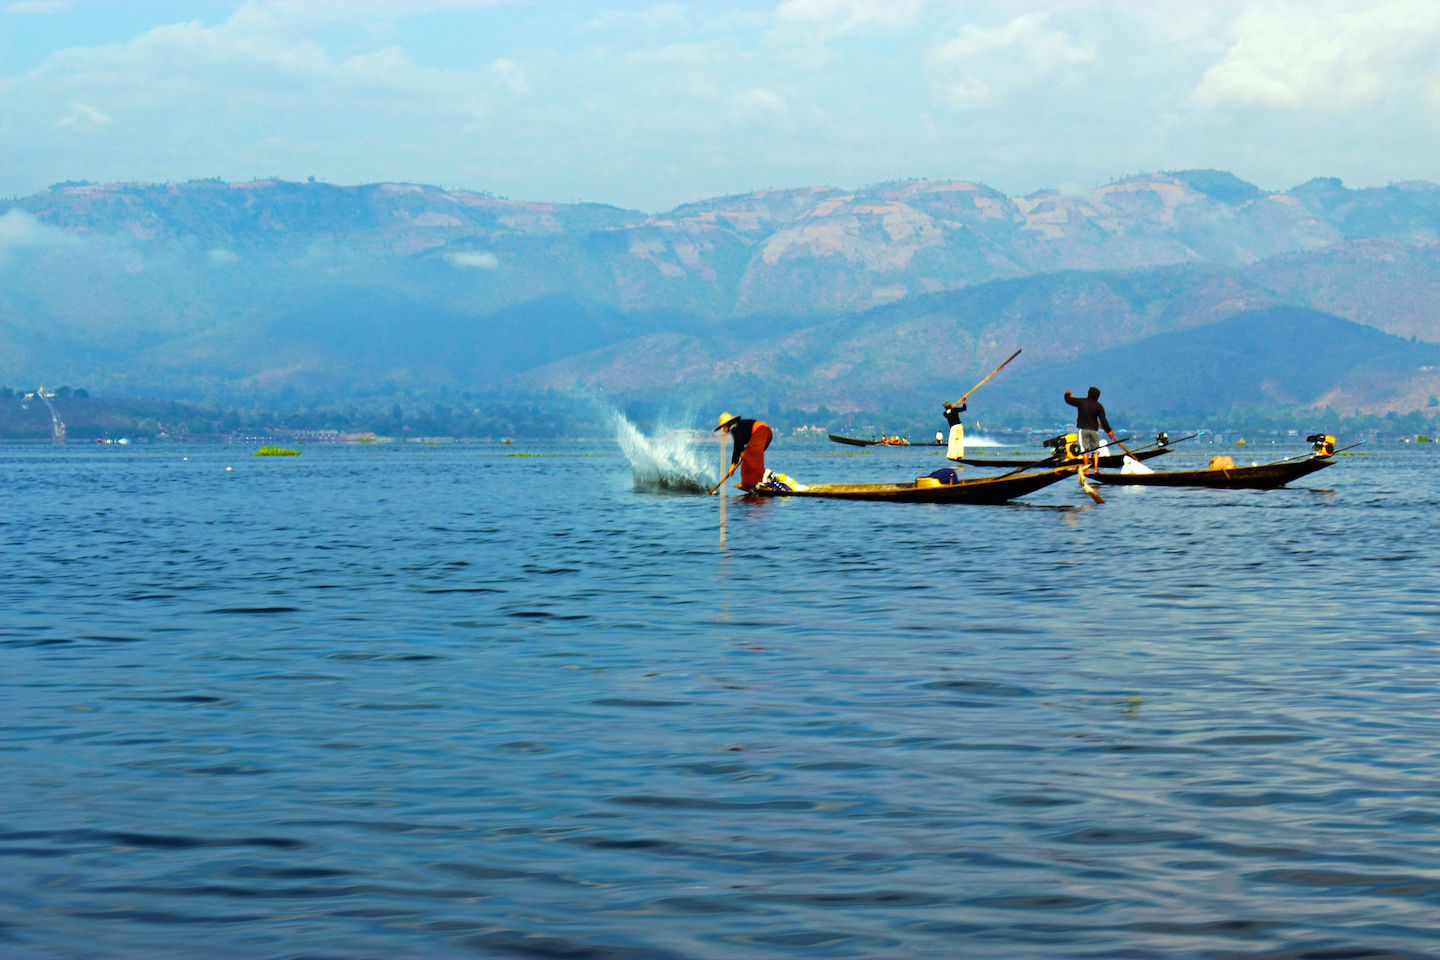 Fisherman using poles to hit the water on Inle Lake, Myanmar